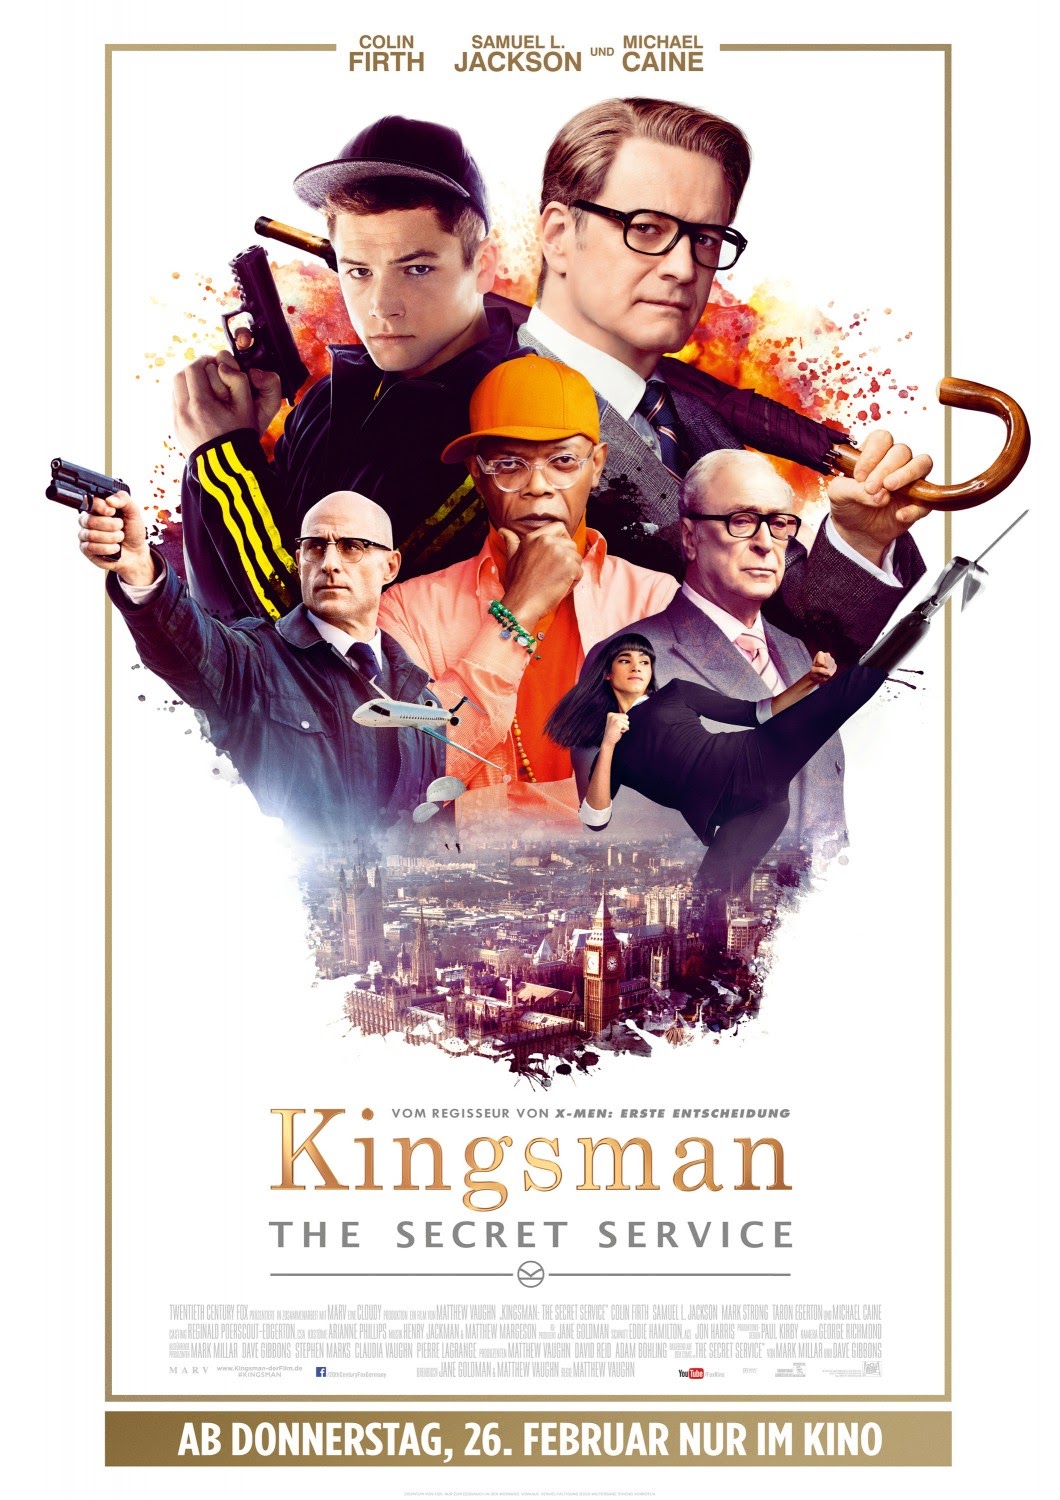 Kingsman: The Secret Service นี่มันหนัง โคตรเจ๋ง!!! - Pantip